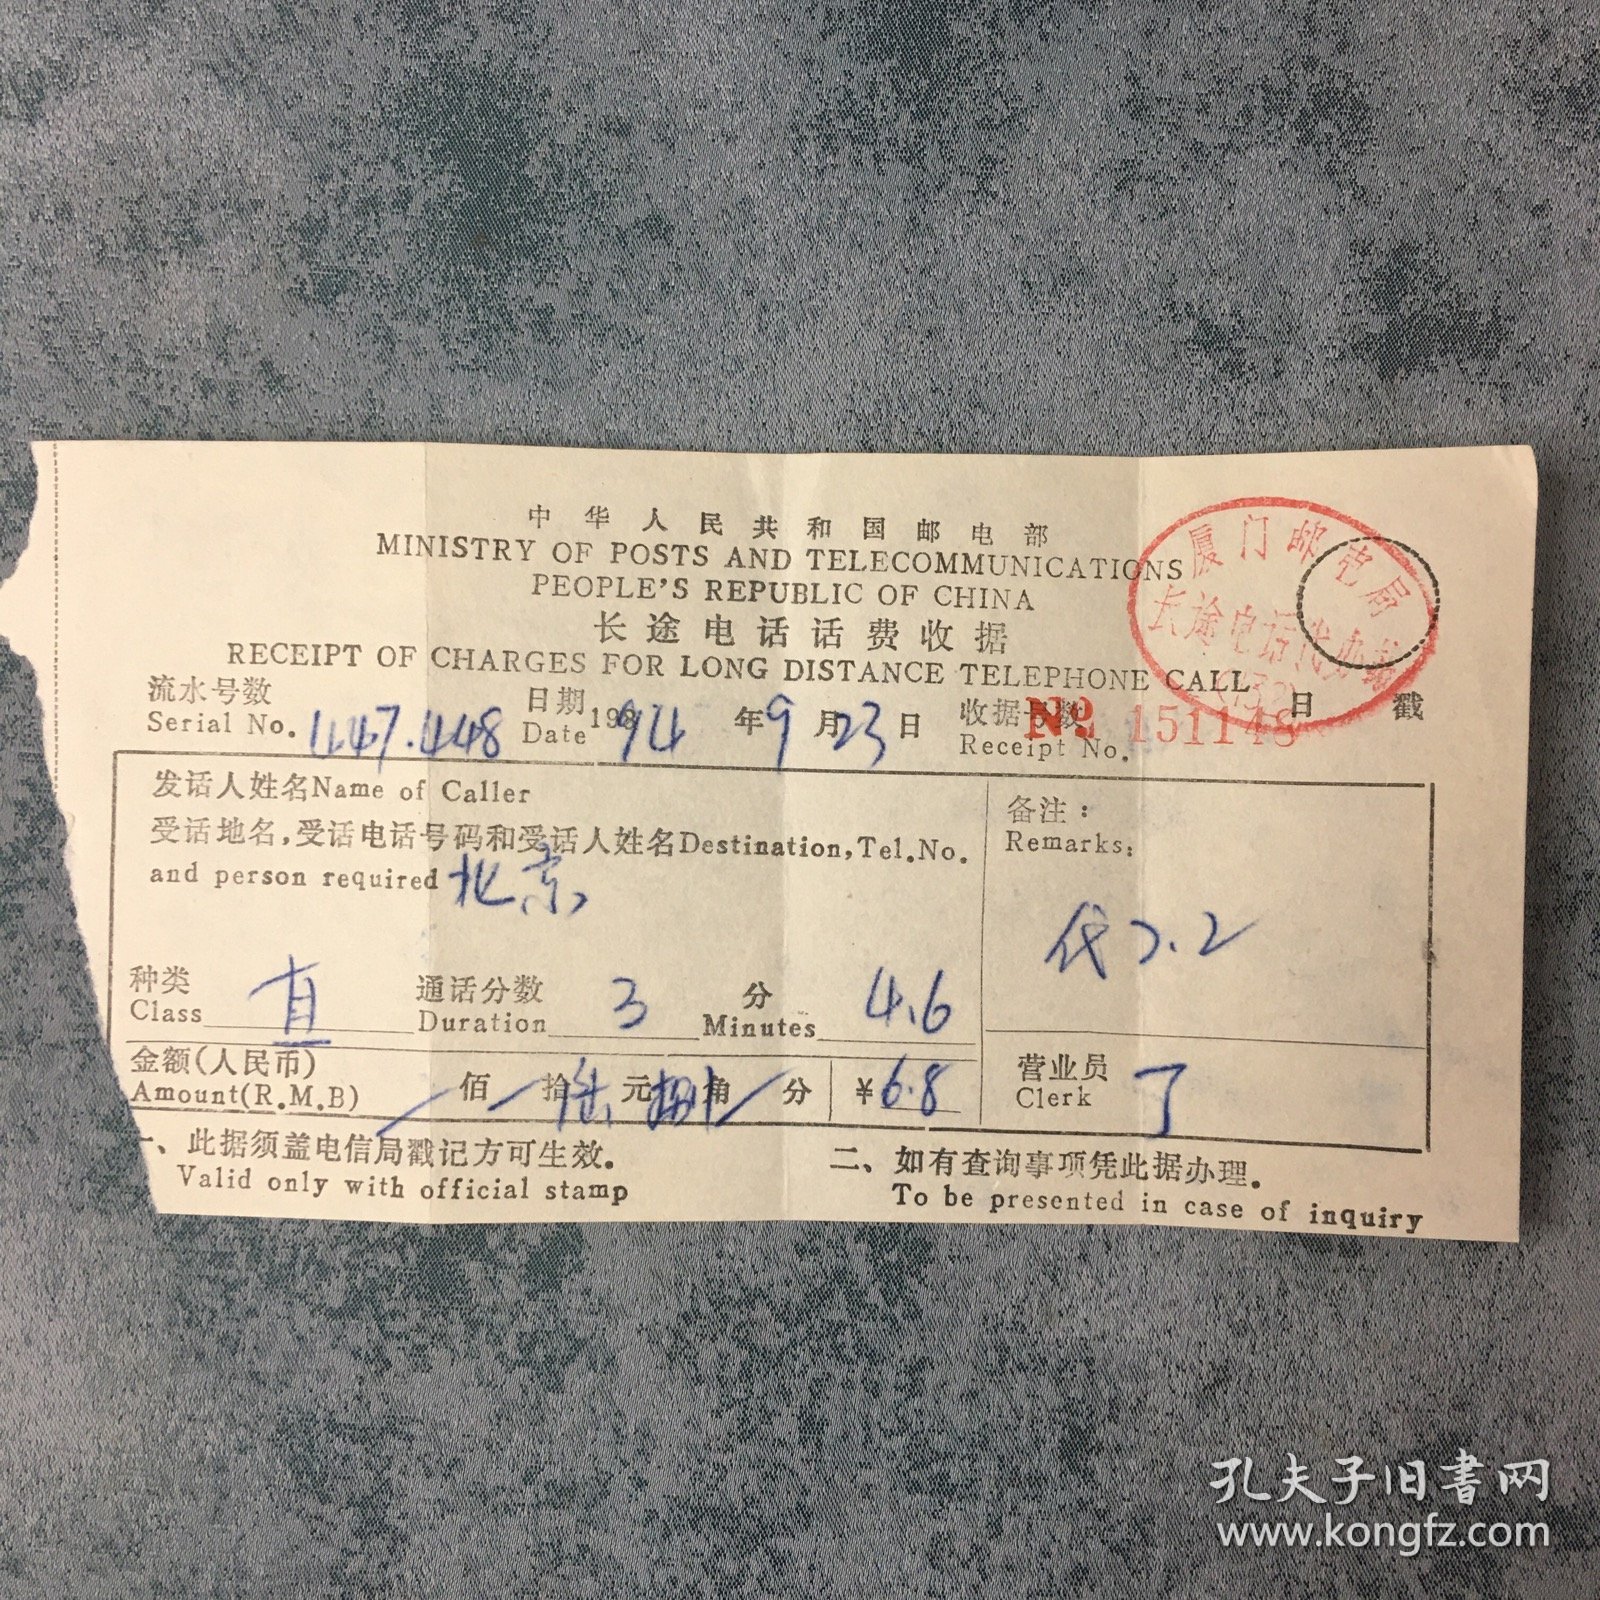 票据 中华人民共和国邮电部 长途电话话费收据  厦门邮电局印章